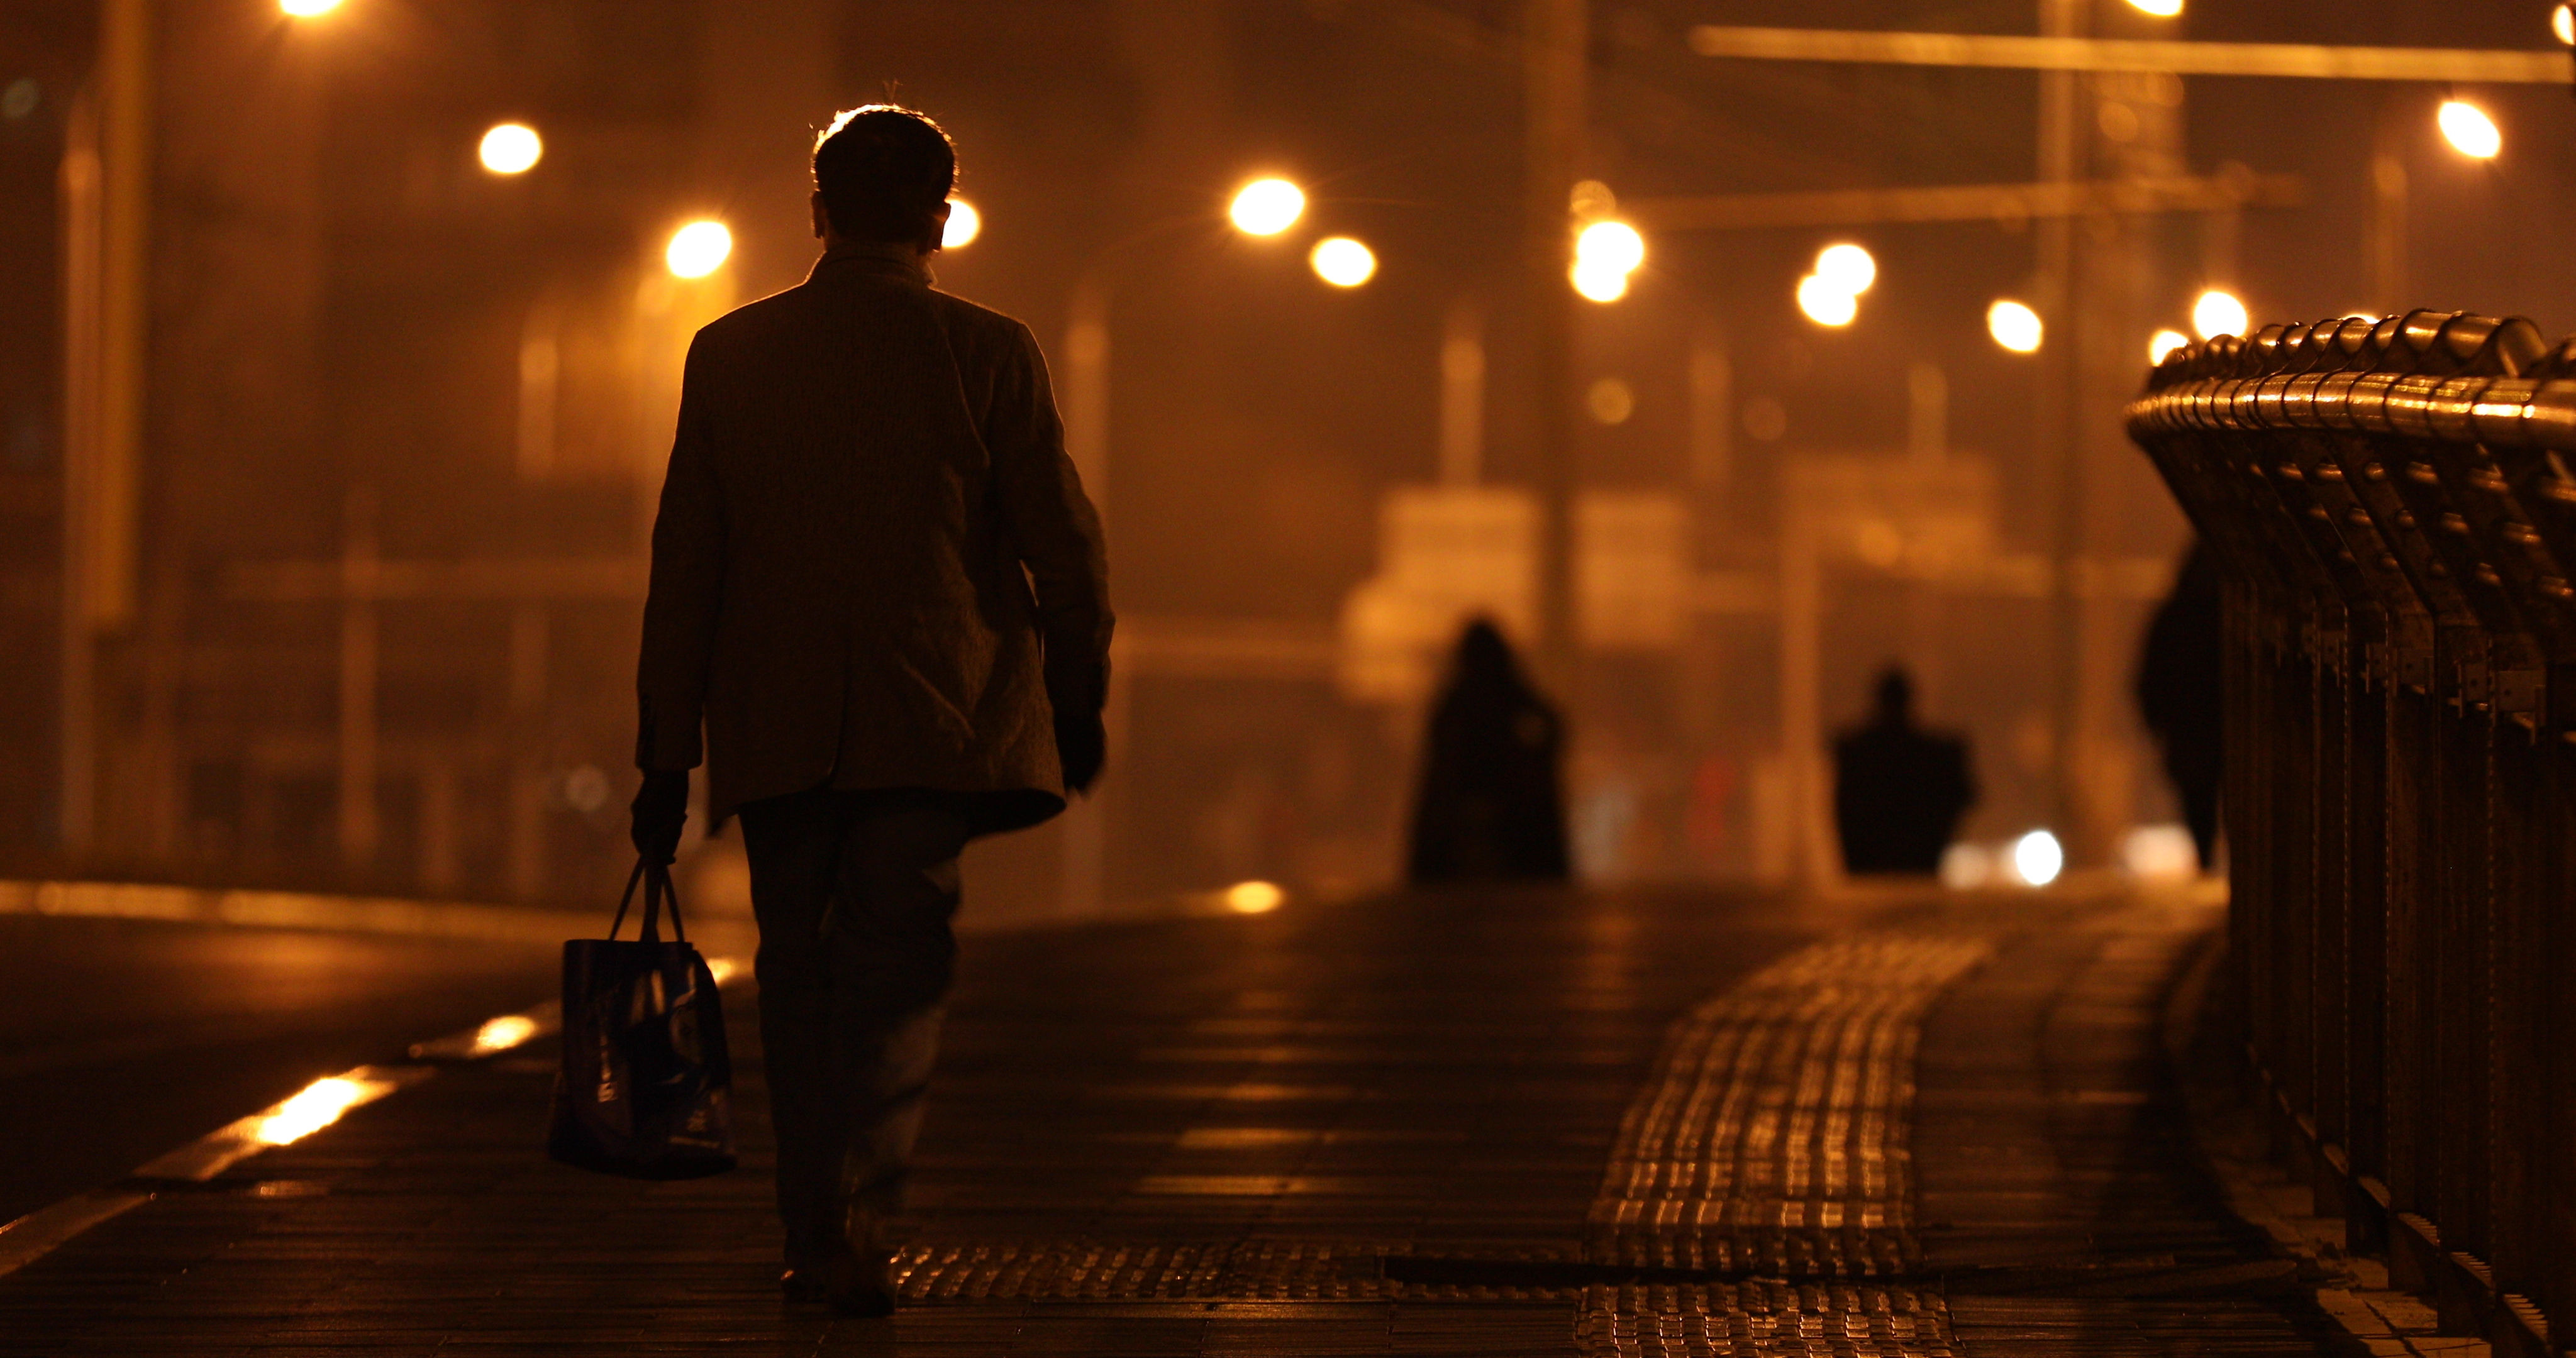 夜景孤独路灯下的人照明疲惫城市中的背影小雨撑伞夜晚走路走在路上